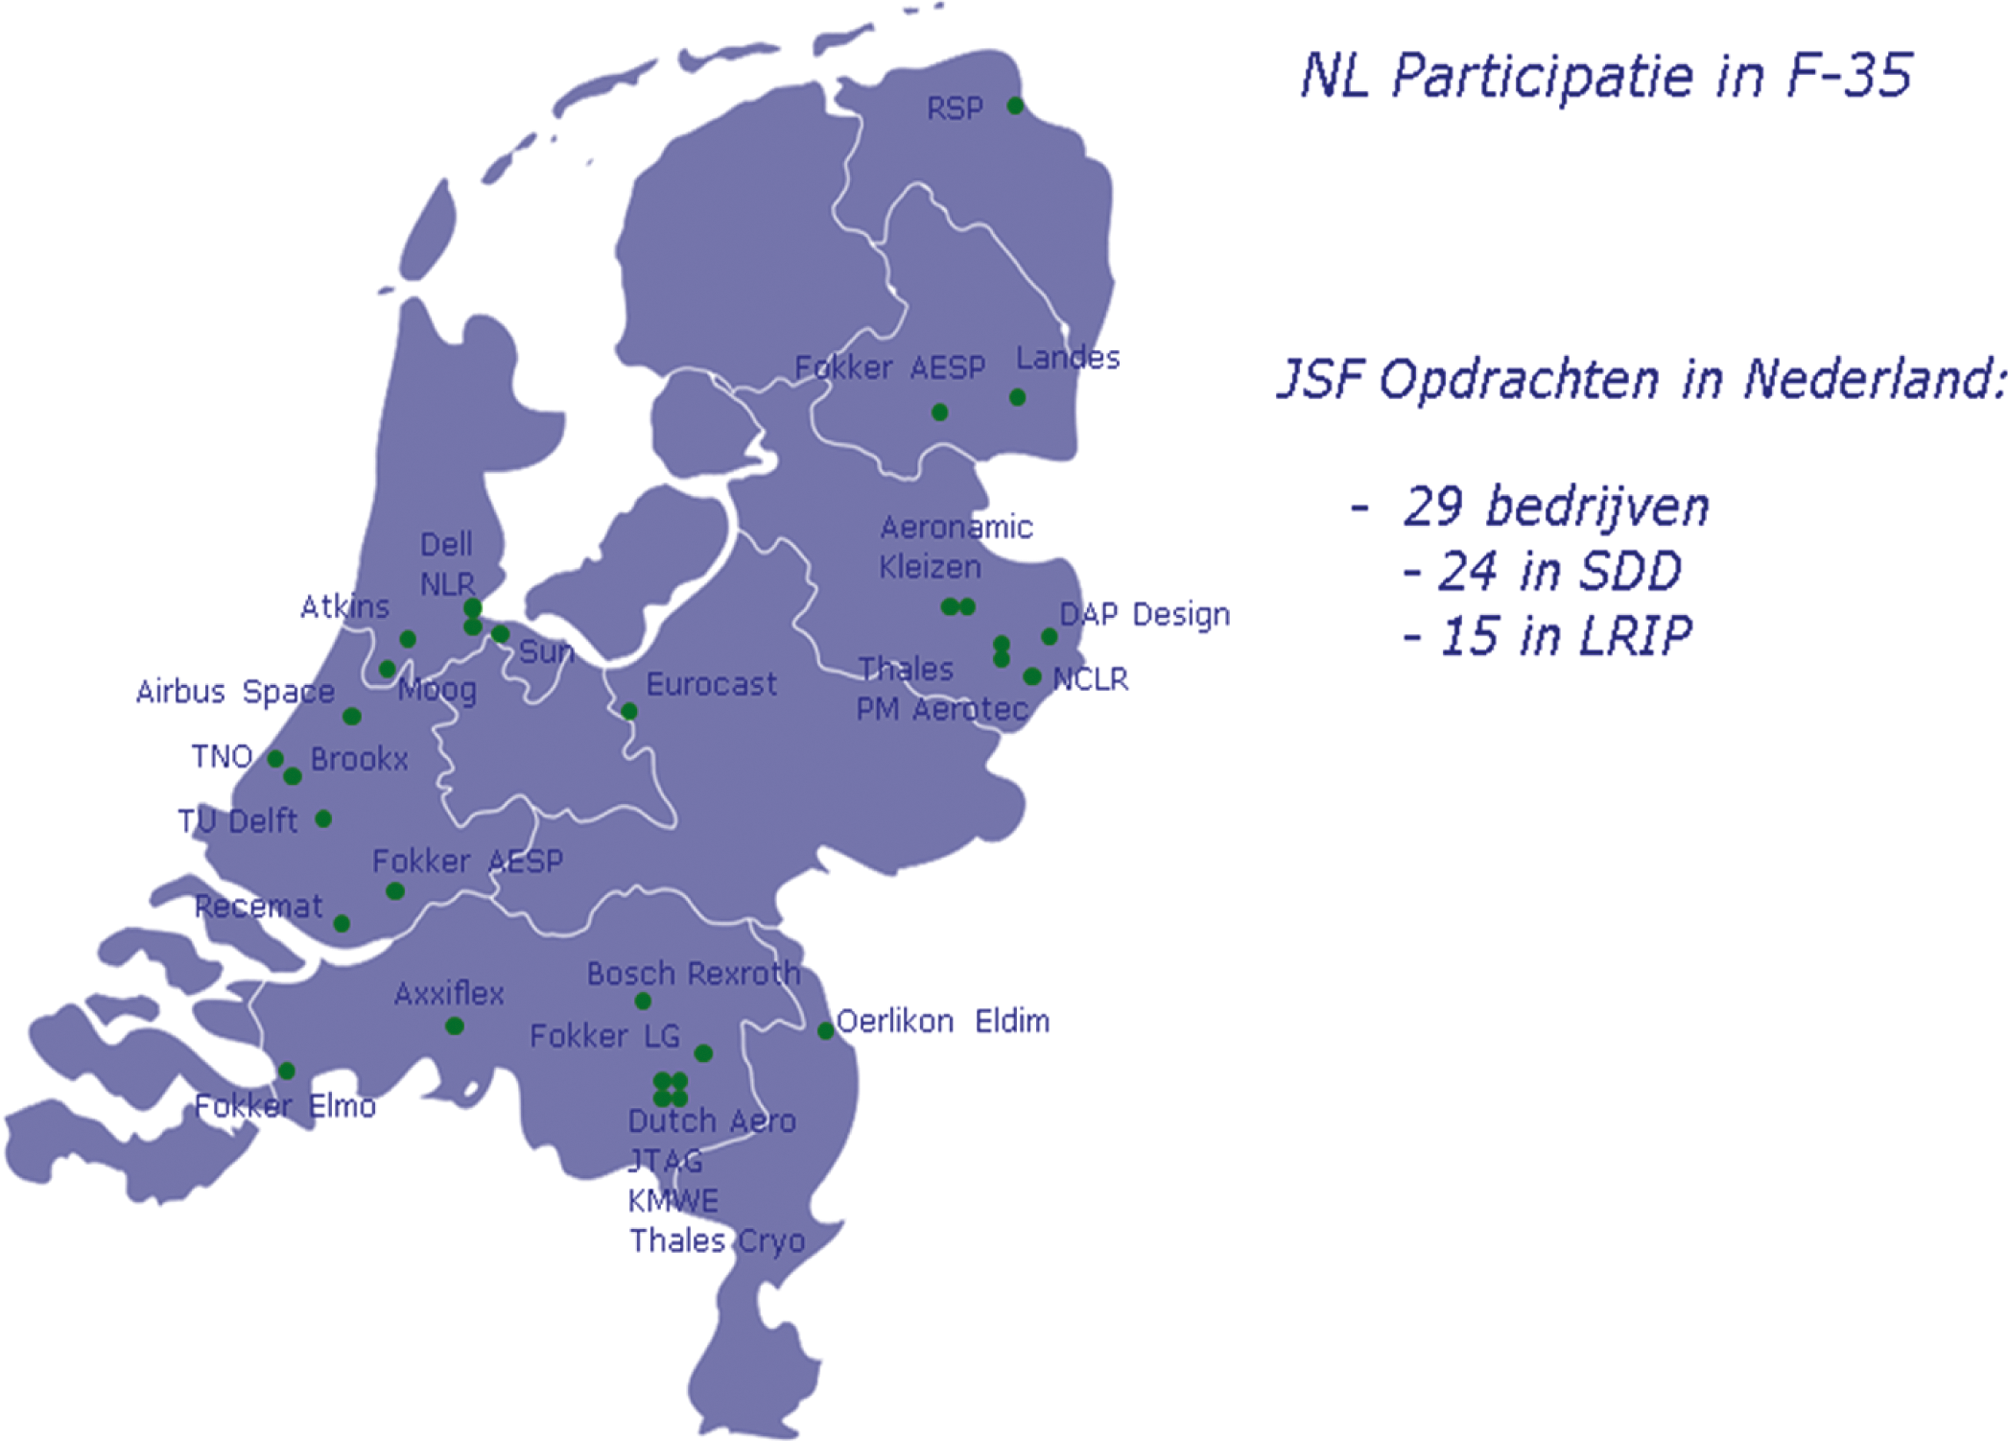 Figuur 2: NL Participatie in F-35